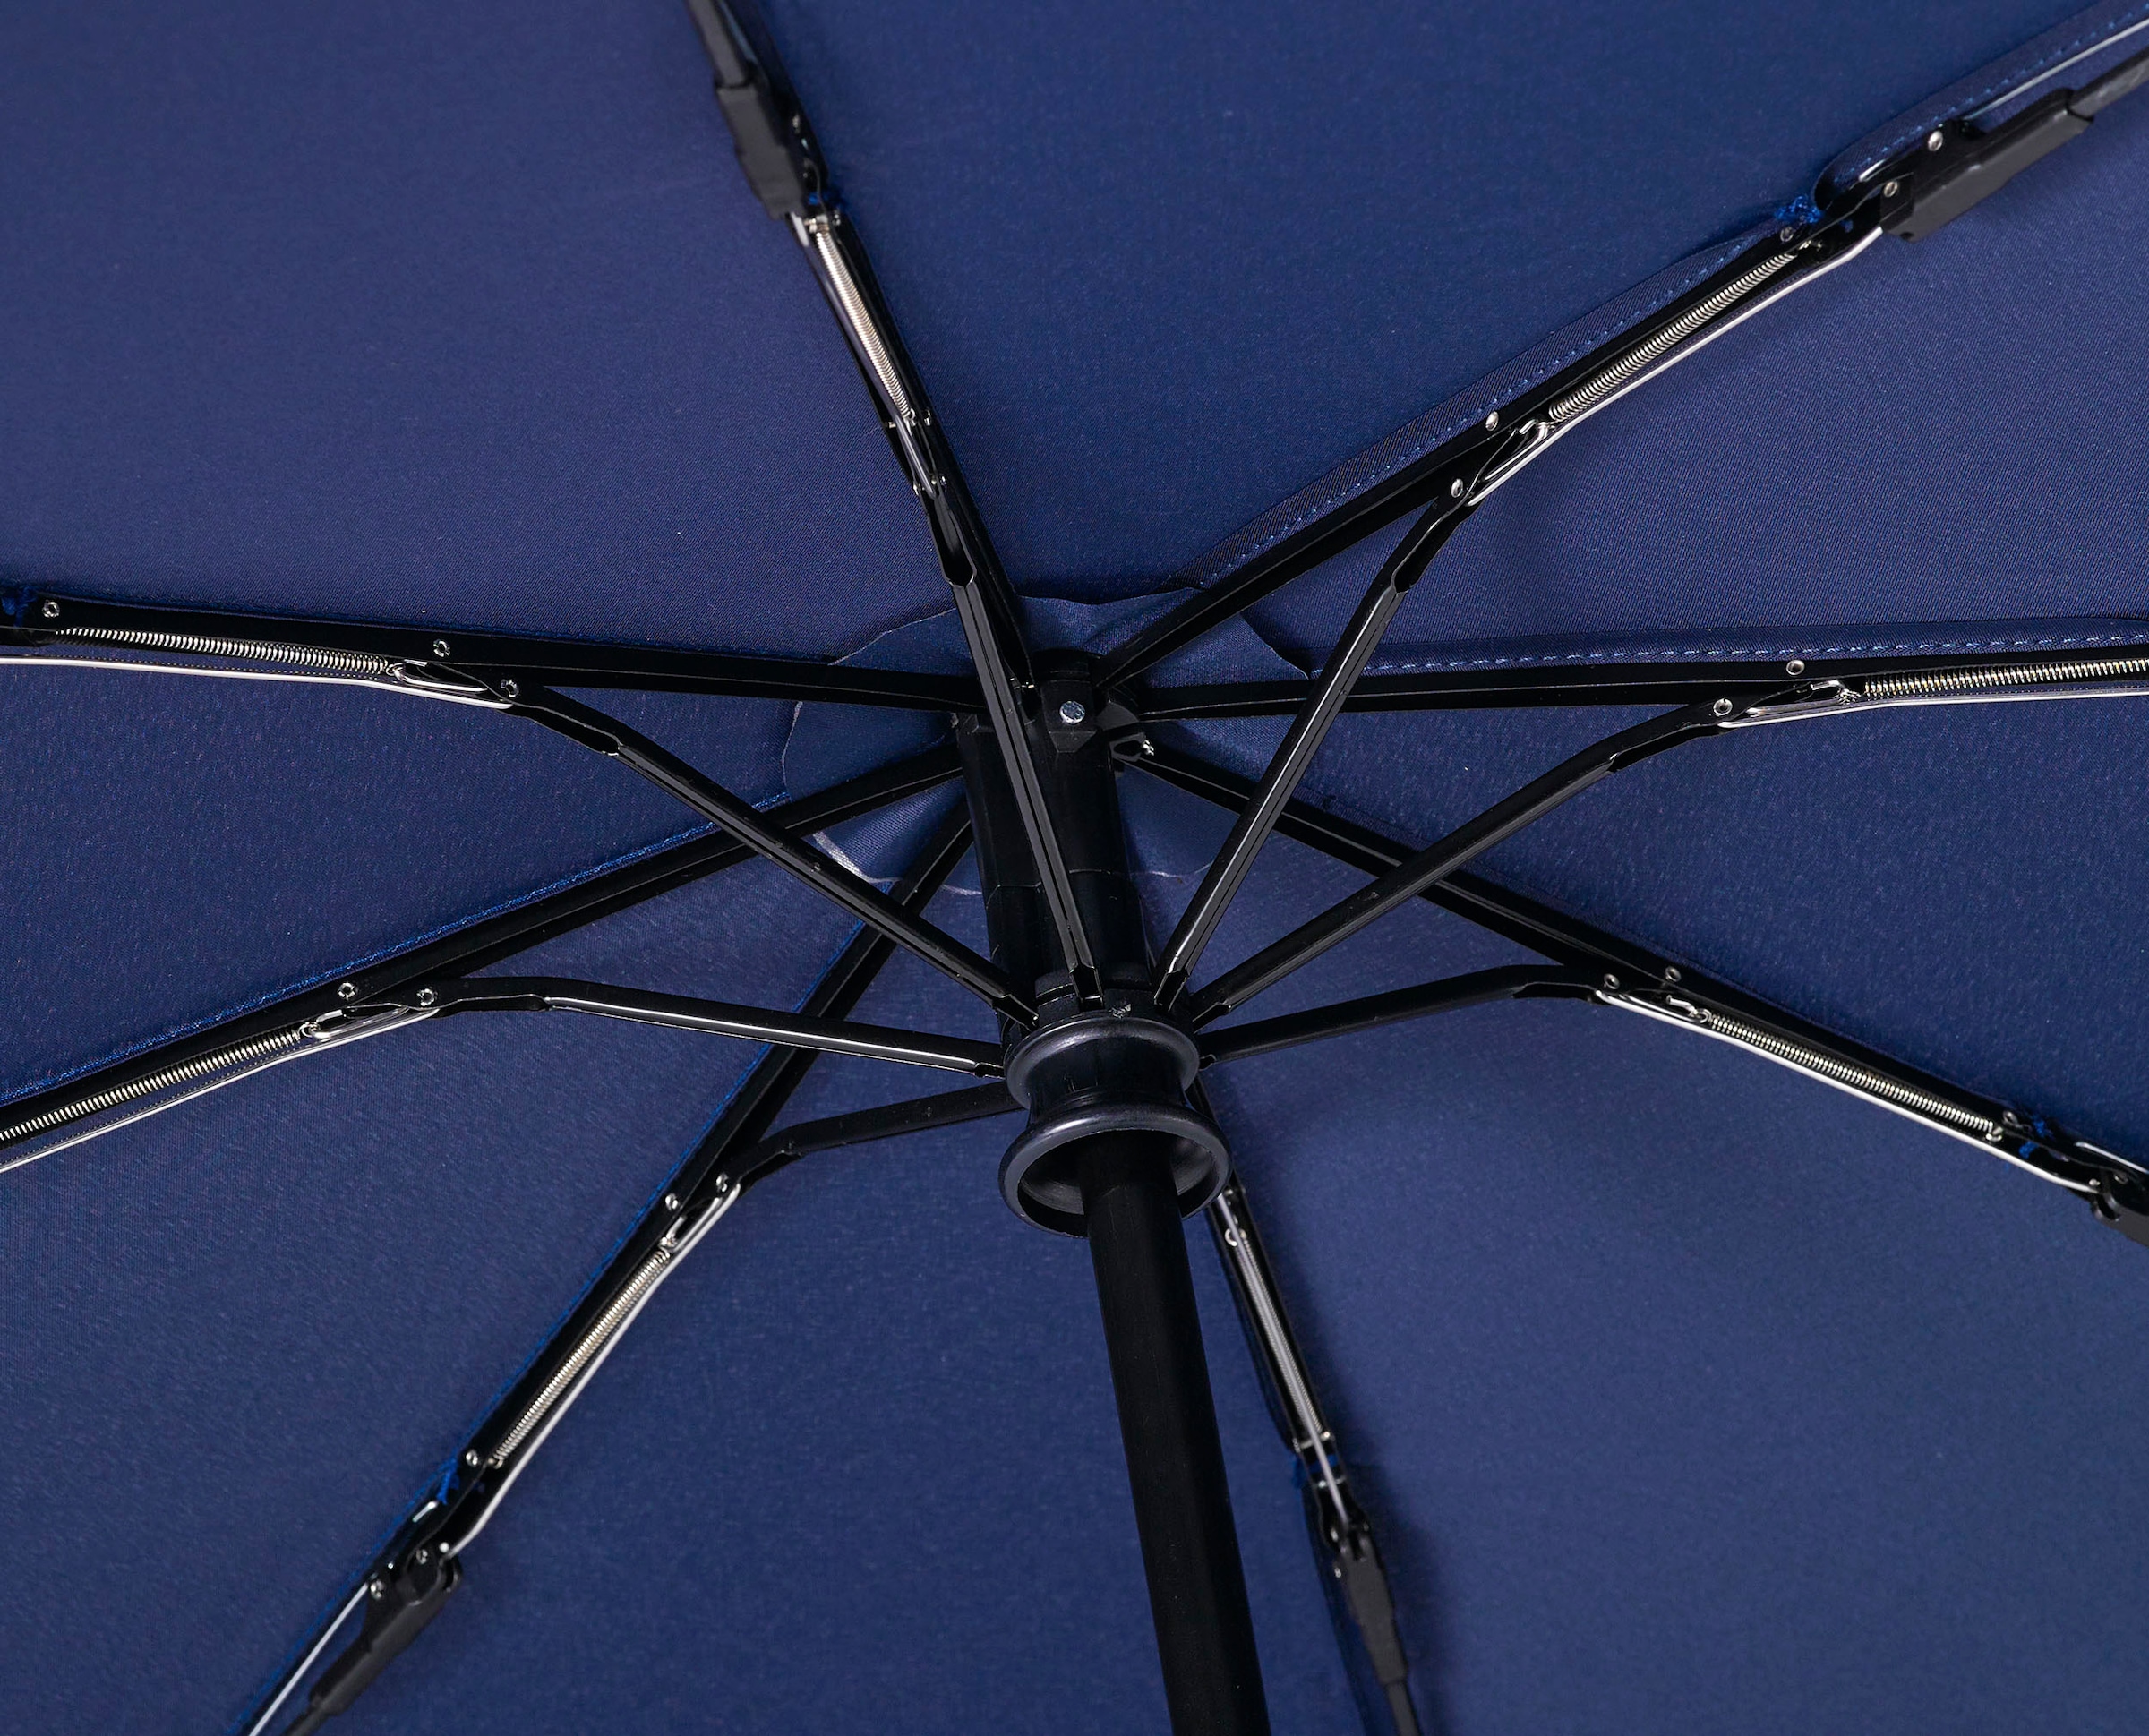 EuroSCHIRM® Taschenregenschirm »Umwelt-Taschenschirm, marine, Kreise blau«, kompakte Größe, Automatik, Echtholzgriff aus Buche